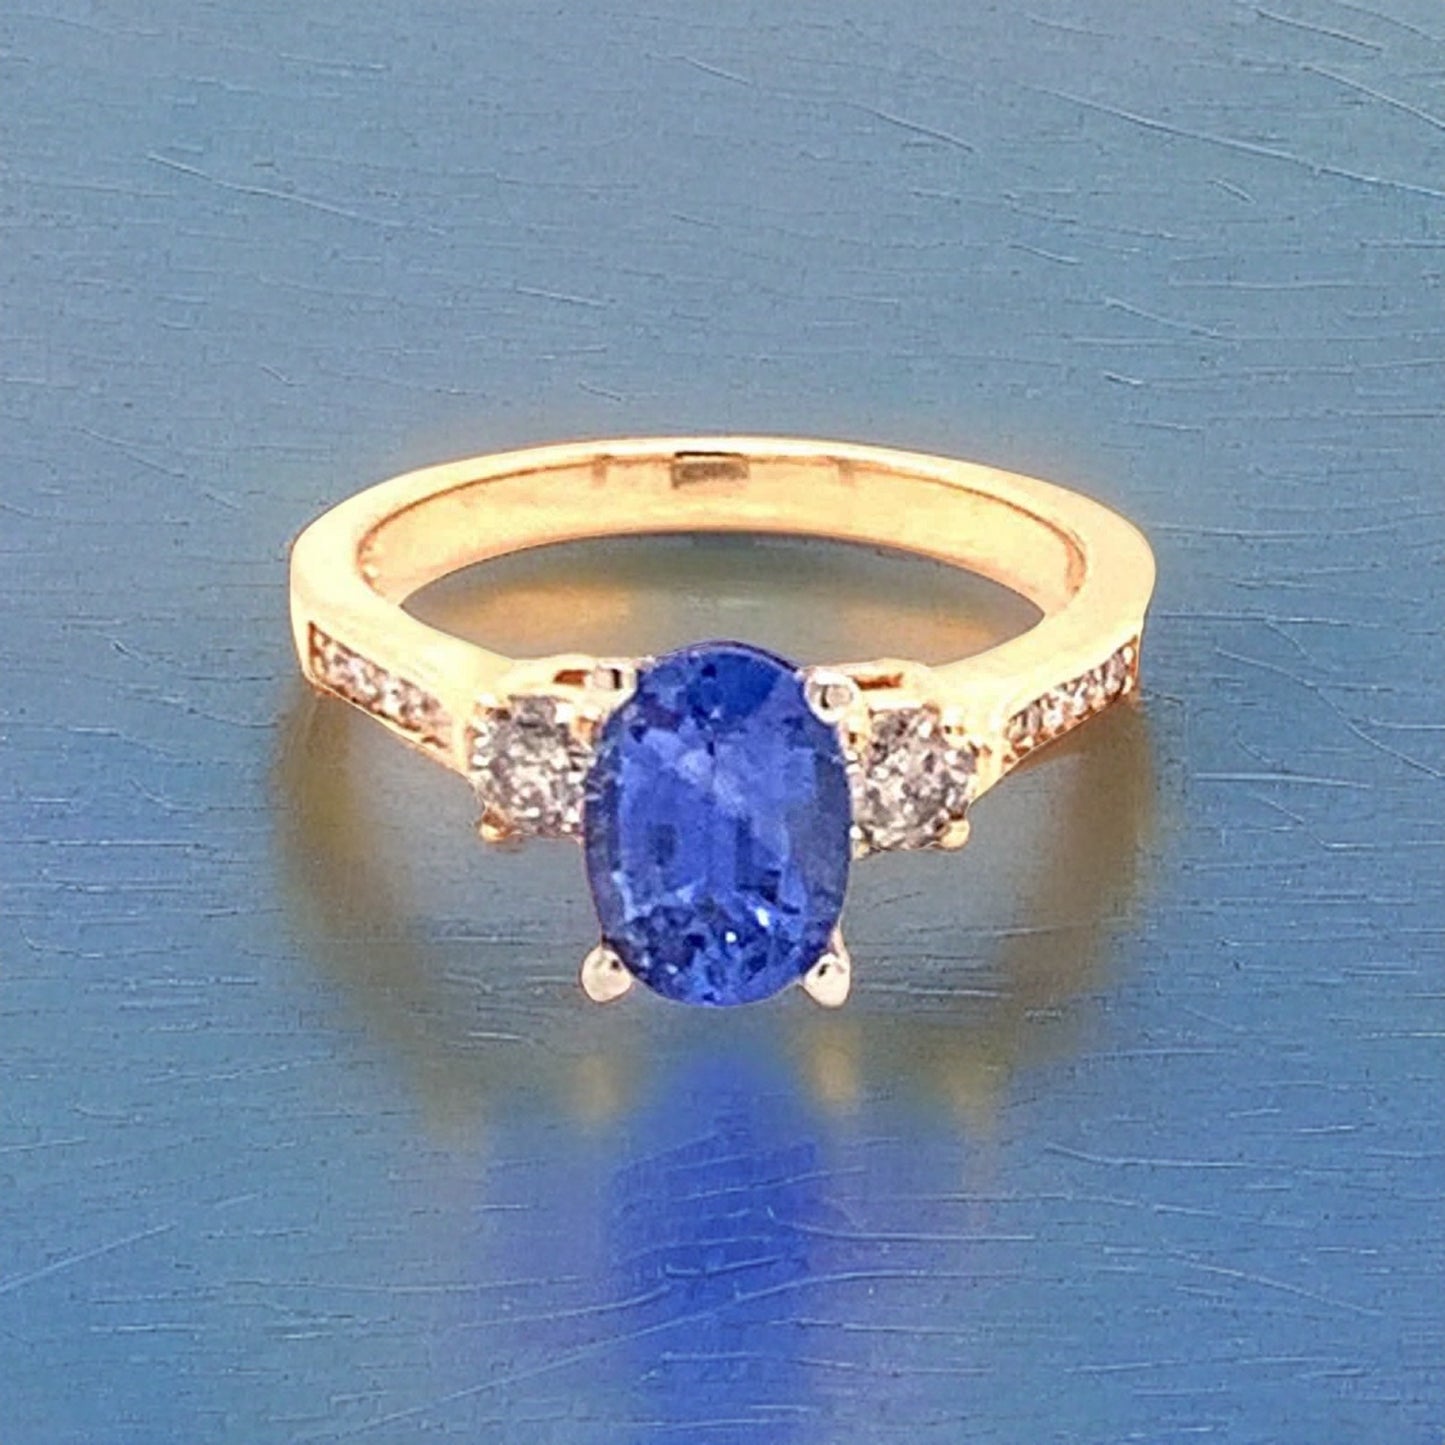 Diamond Blue Sapphire Ring 14k Gold Women Certified $4,950 915310 - Certified Fine Jewelry